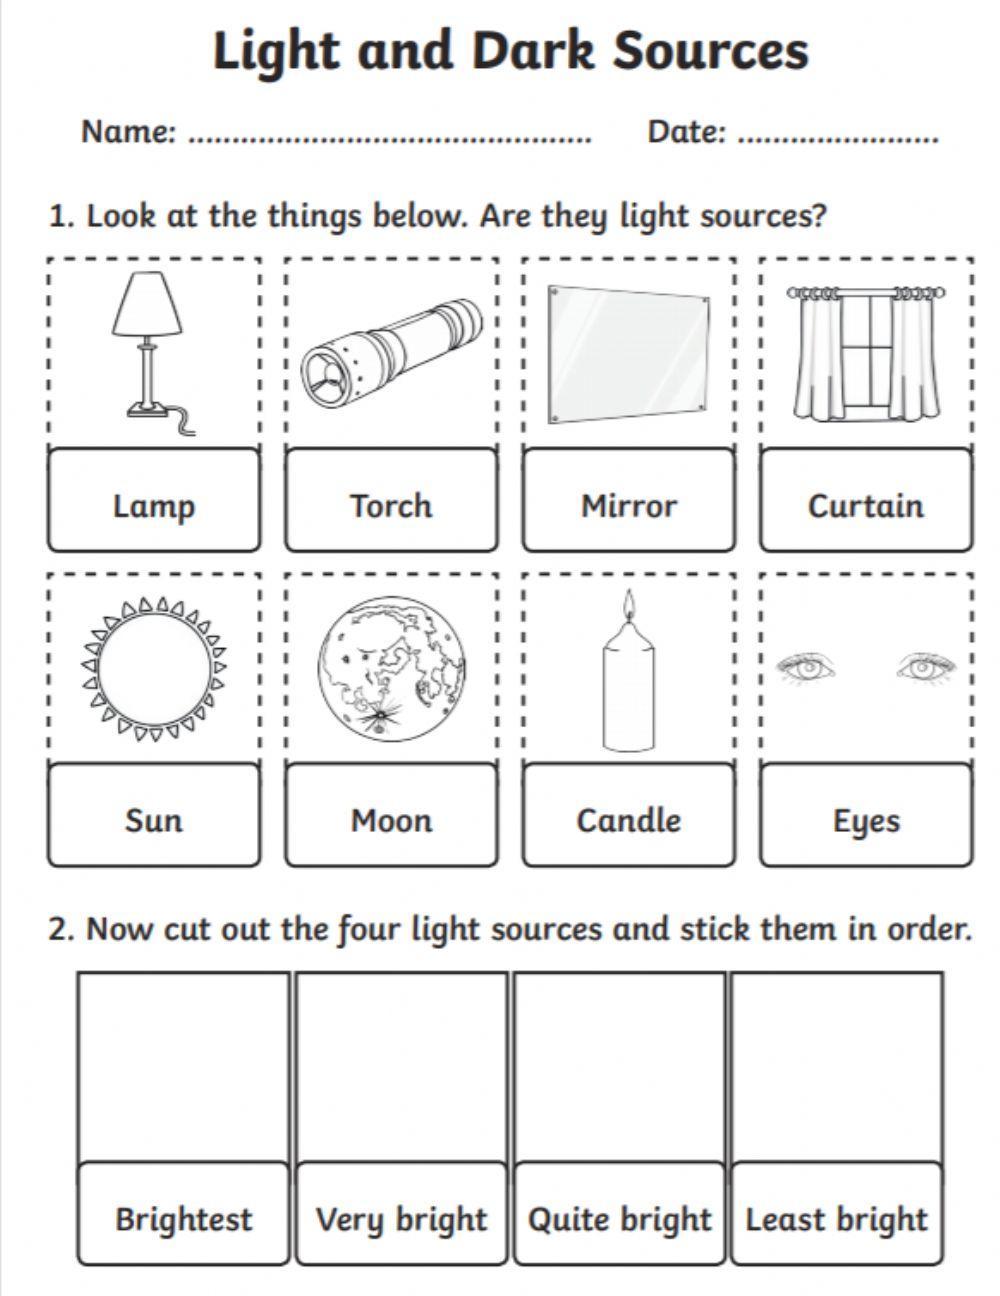 Light sources